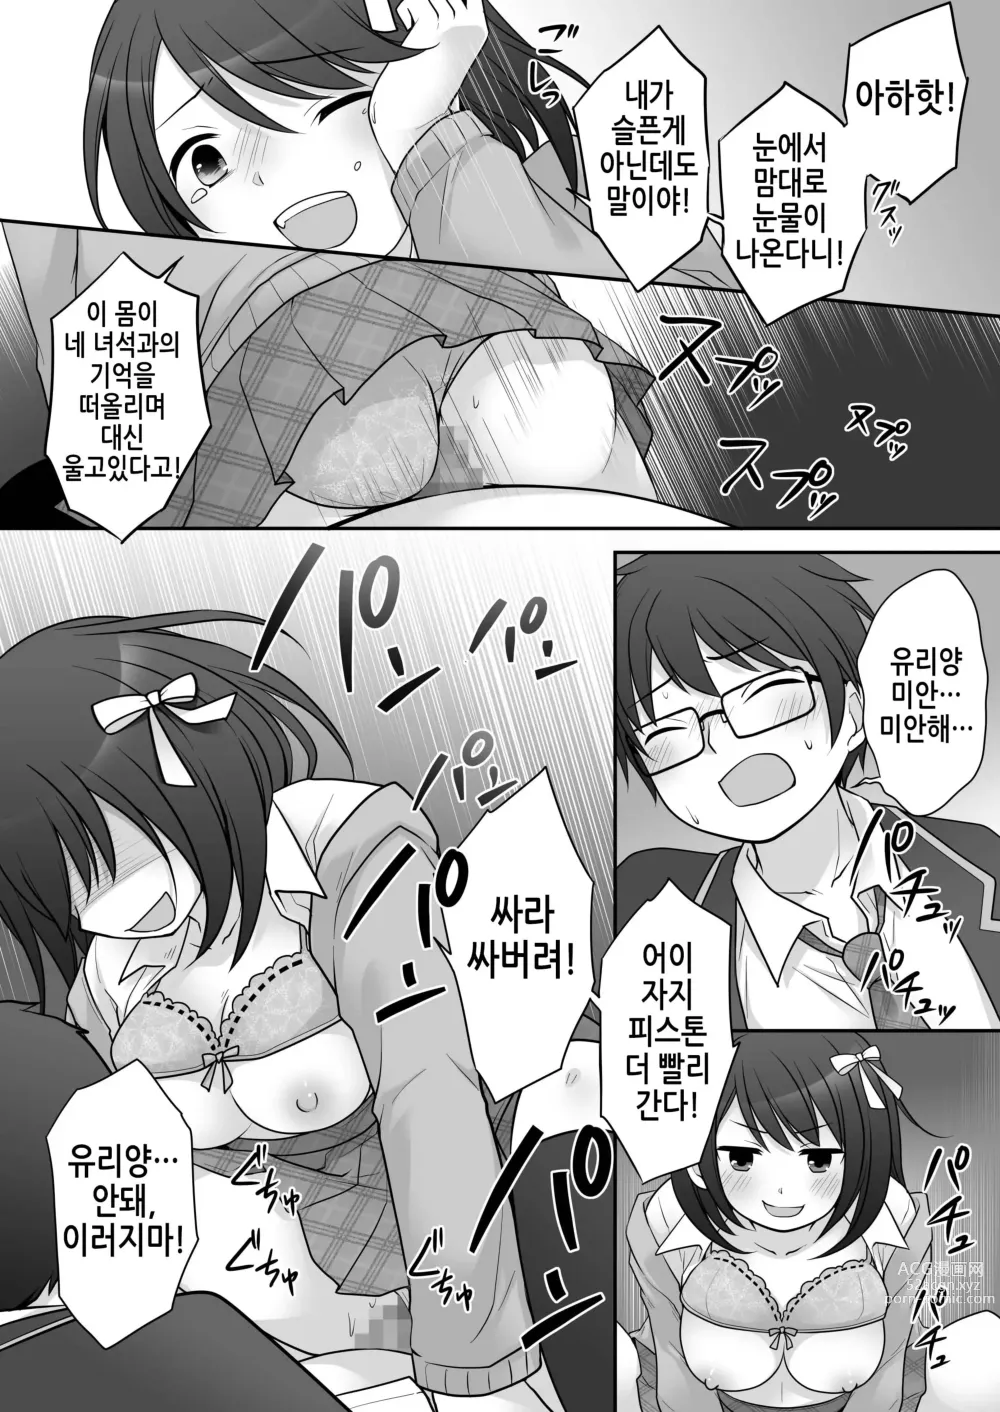 Page 21 of doujinshi 불량 in 그녀 내 여자친구의 몸뚱이는 불량남에게 납치되었다.